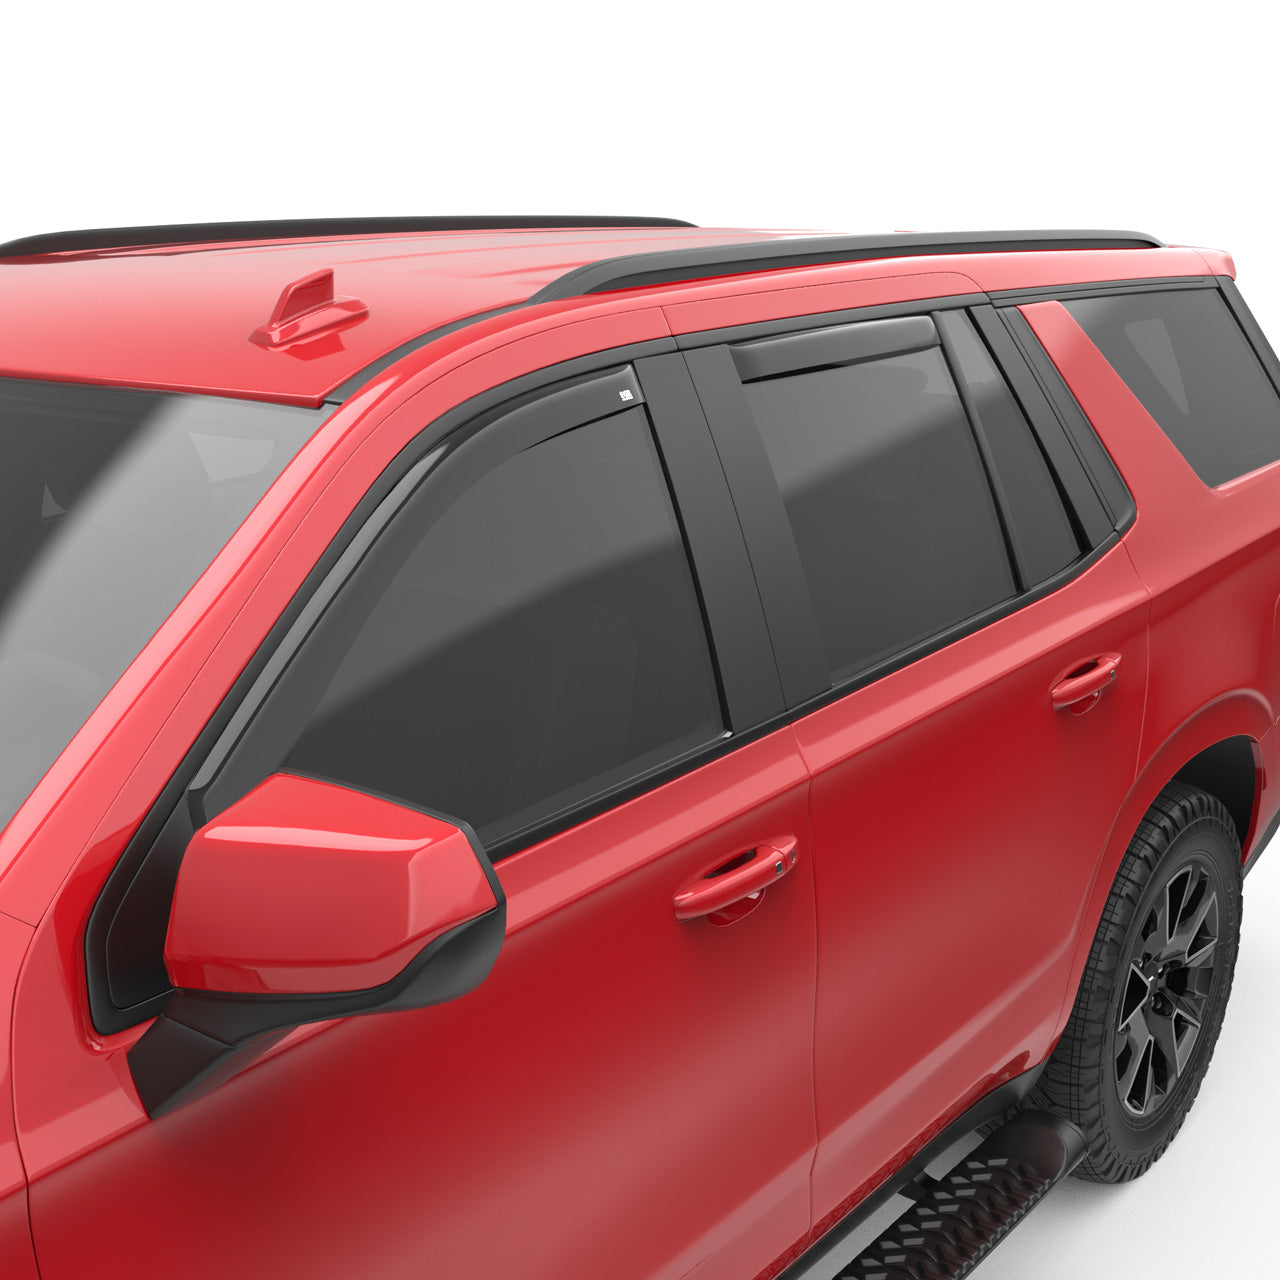 EGR In-channel Window Visors Front & Rear Set Dark Smoke - 21-23 Chevrolet Tahoe